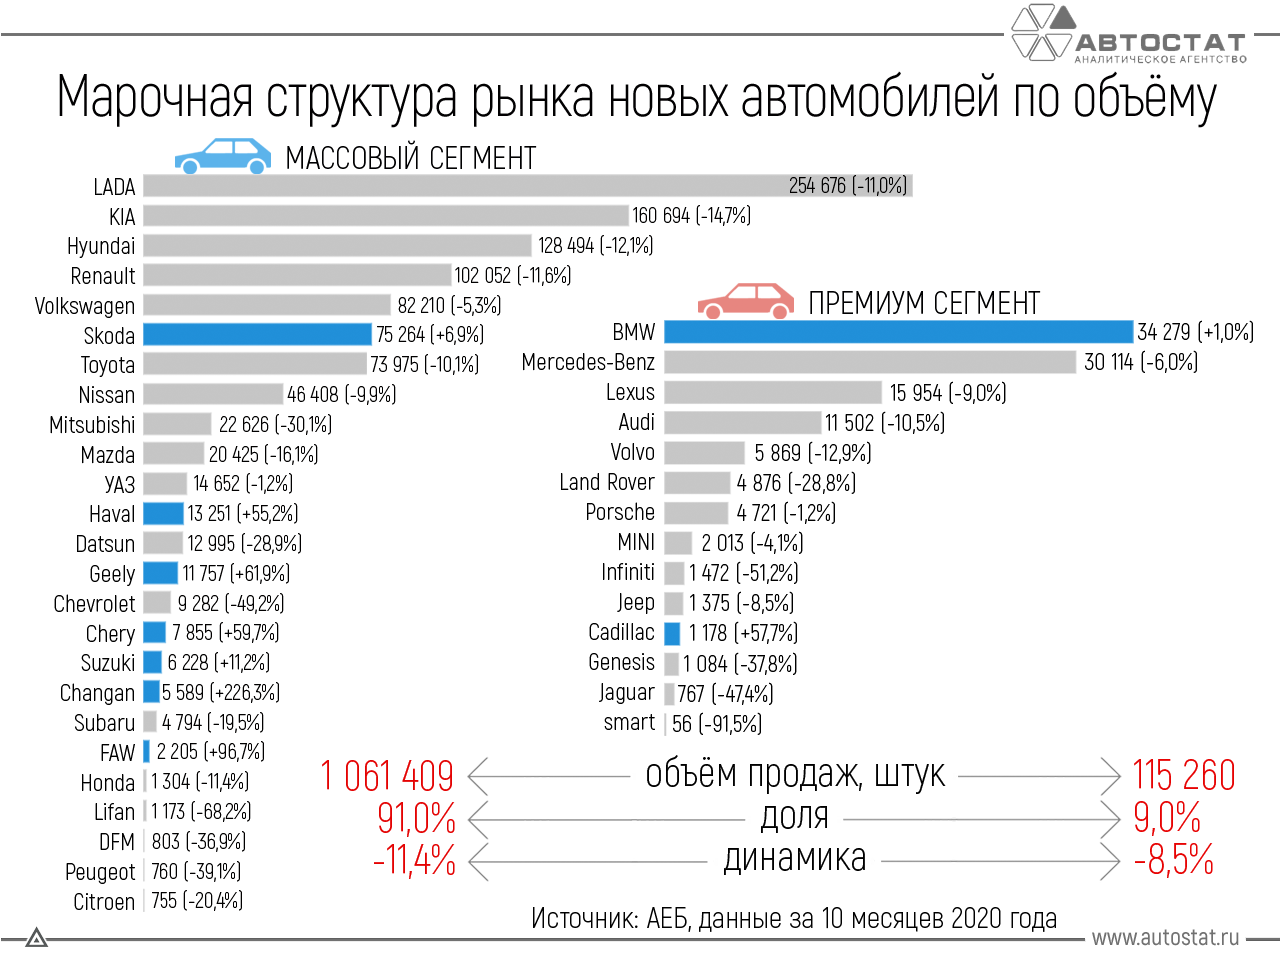 Грузовик страны производители. Емкость автомобильного рынка России 2020. Рынок автомобилей марки. Авто статистика. Самые продаваемые марки автомобилей.